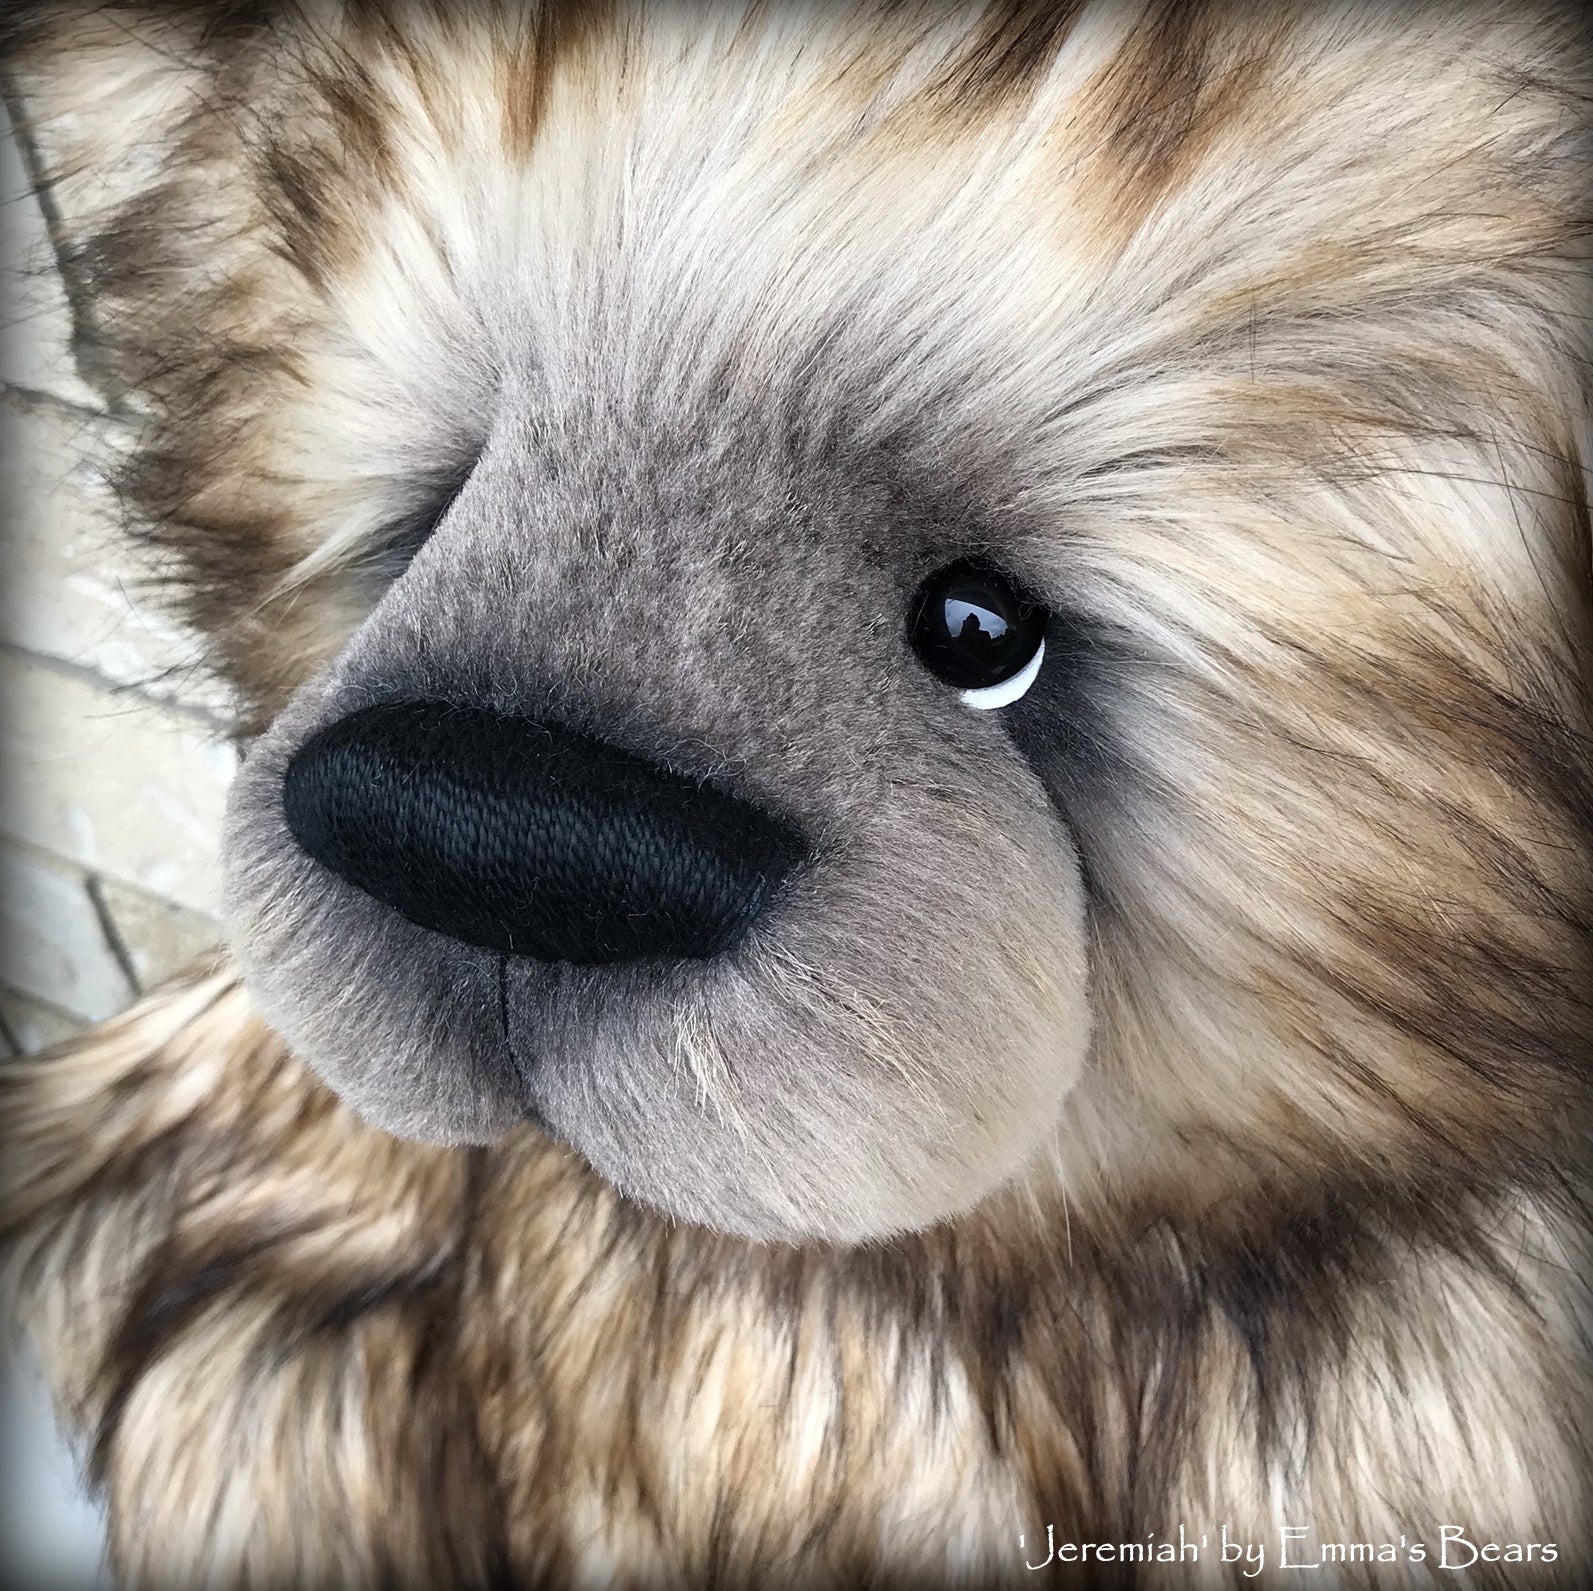 Jeremiah - 28in Deluxe Faux Fur Artist Bear by Emmas Bears - OOAK